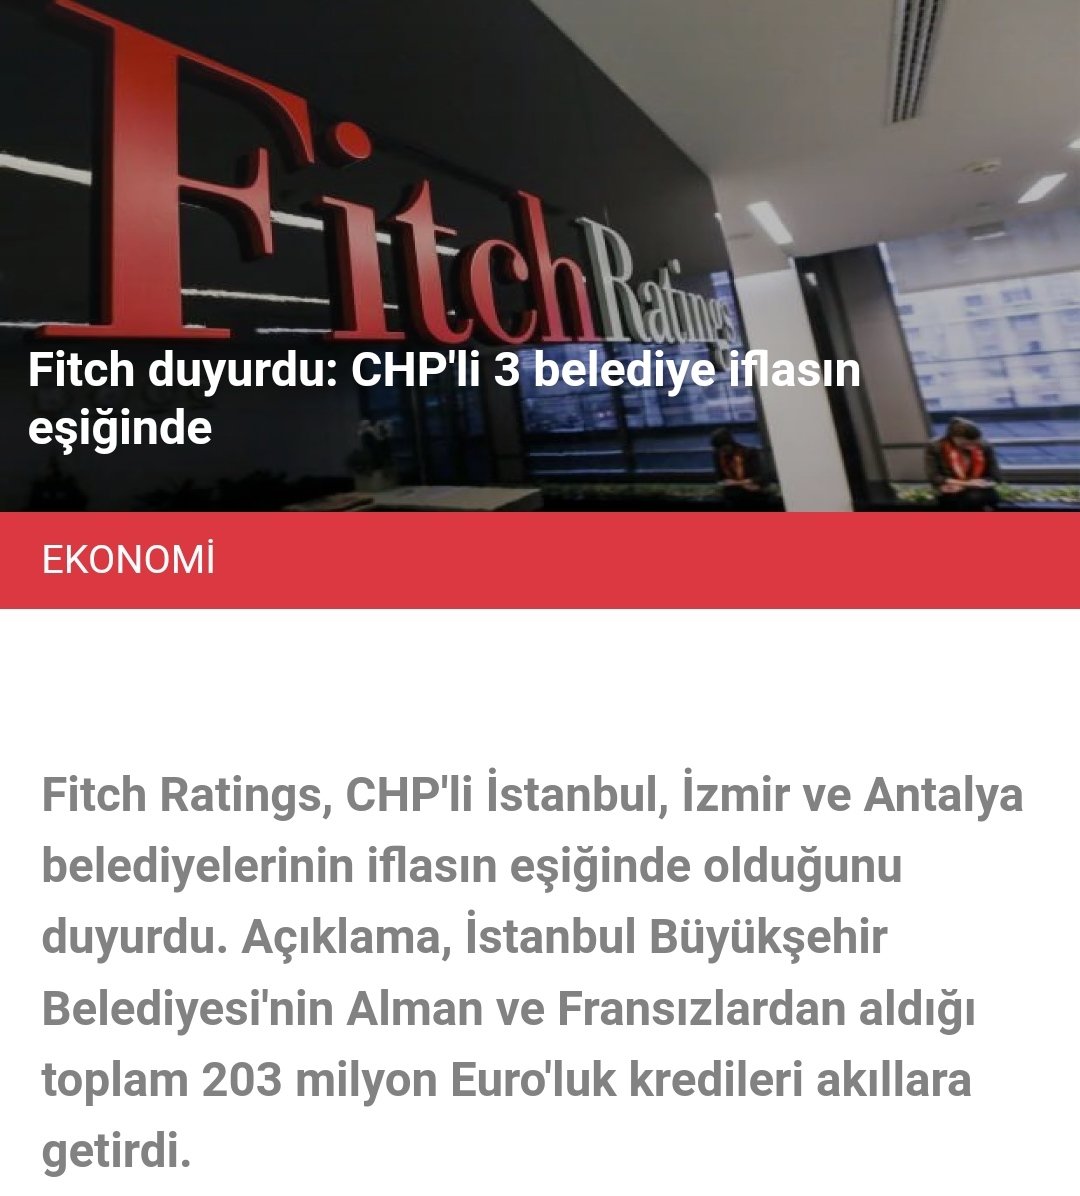 Kemal Kılıçdaroğlu, Fitch'ten de açıklama için randevu isteyecek misiniz?